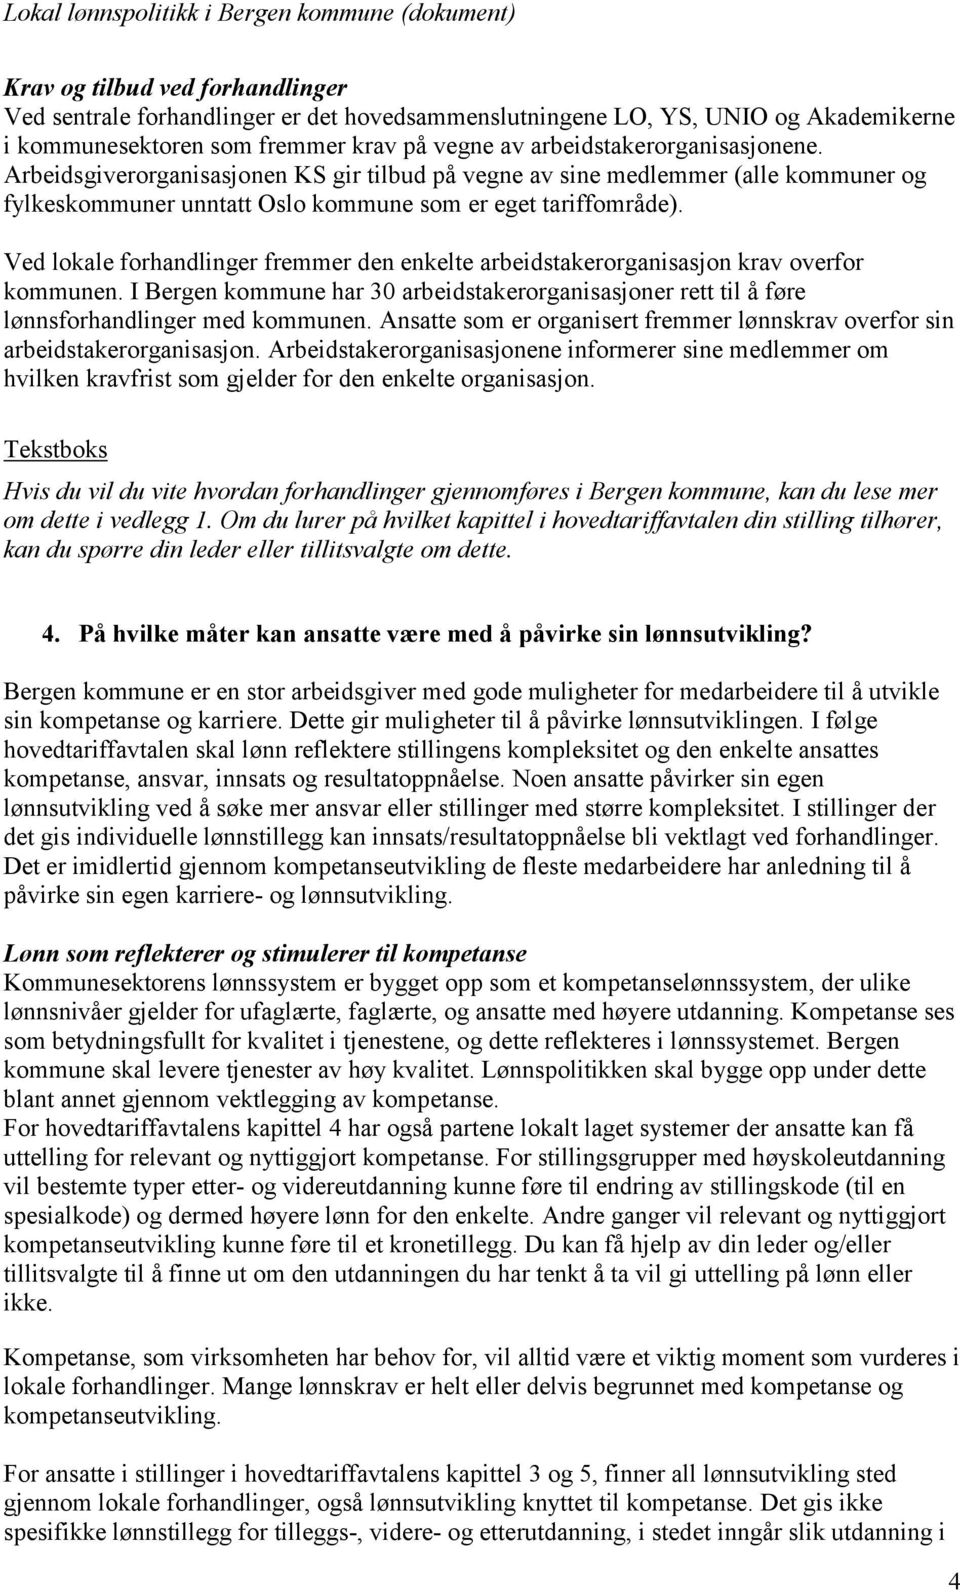 Ved lokale forhandlinger fremmer den enkelte arbeidstakerorganisasjon krav overfor kommunen. I Bergen kommune har 30 arbeidstakerorganisasjoner rett til å føre lønnsforhandlinger med kommunen.